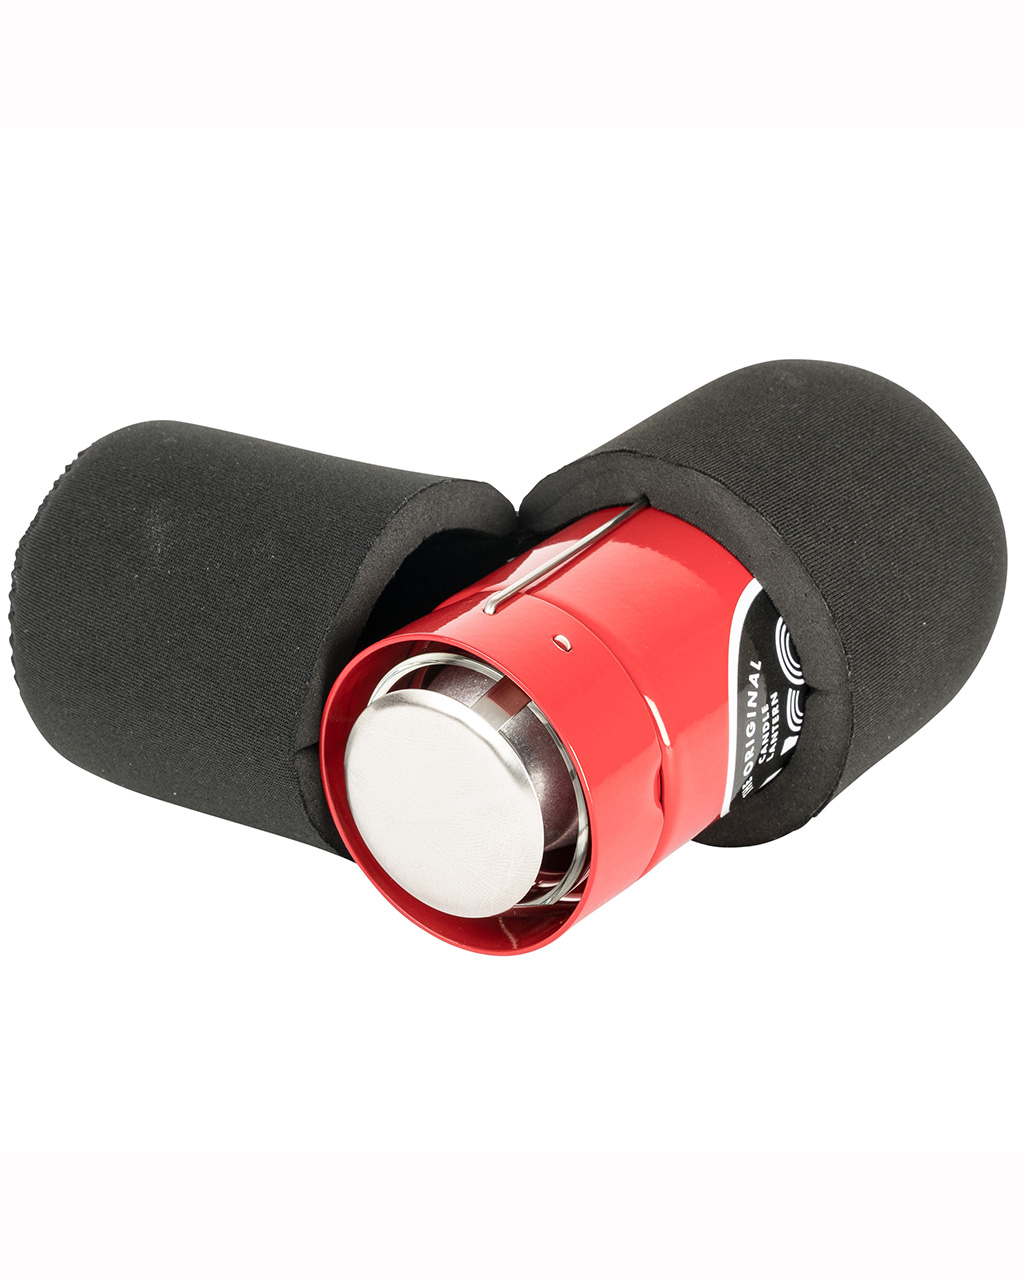 Ljuslykta Original Lantern Kit - Red